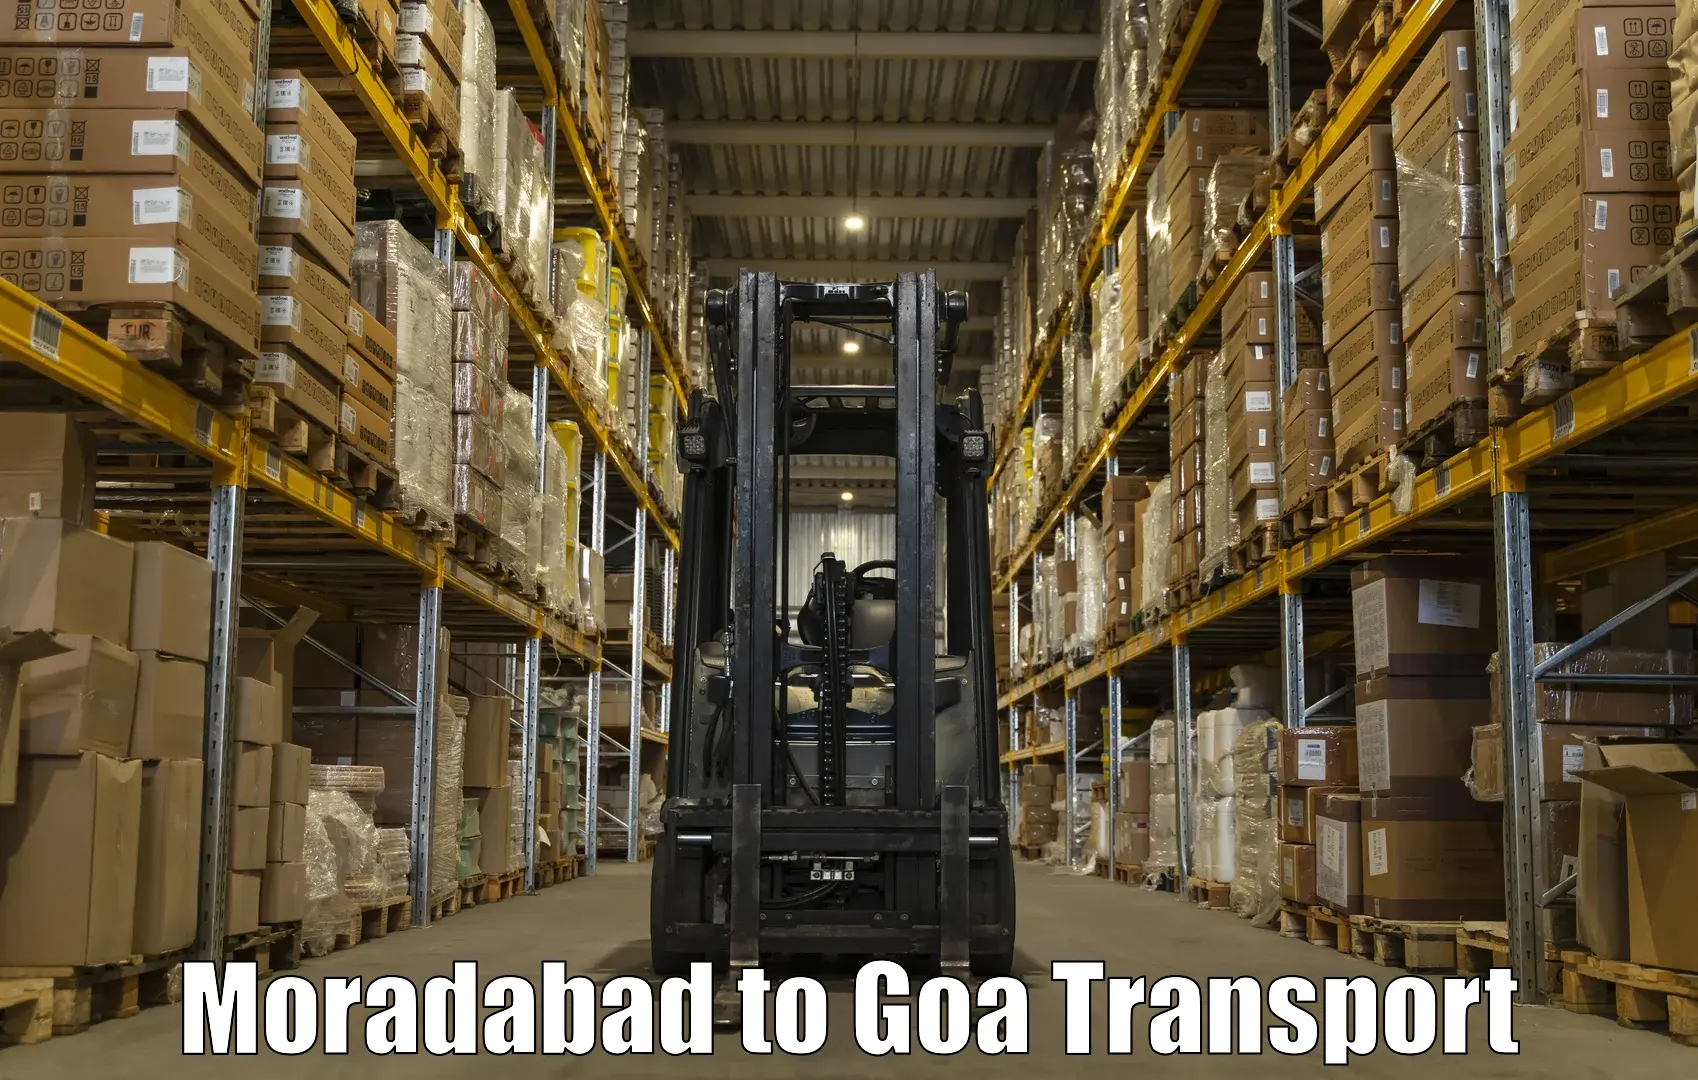 Daily transport service Moradabad to South Goa